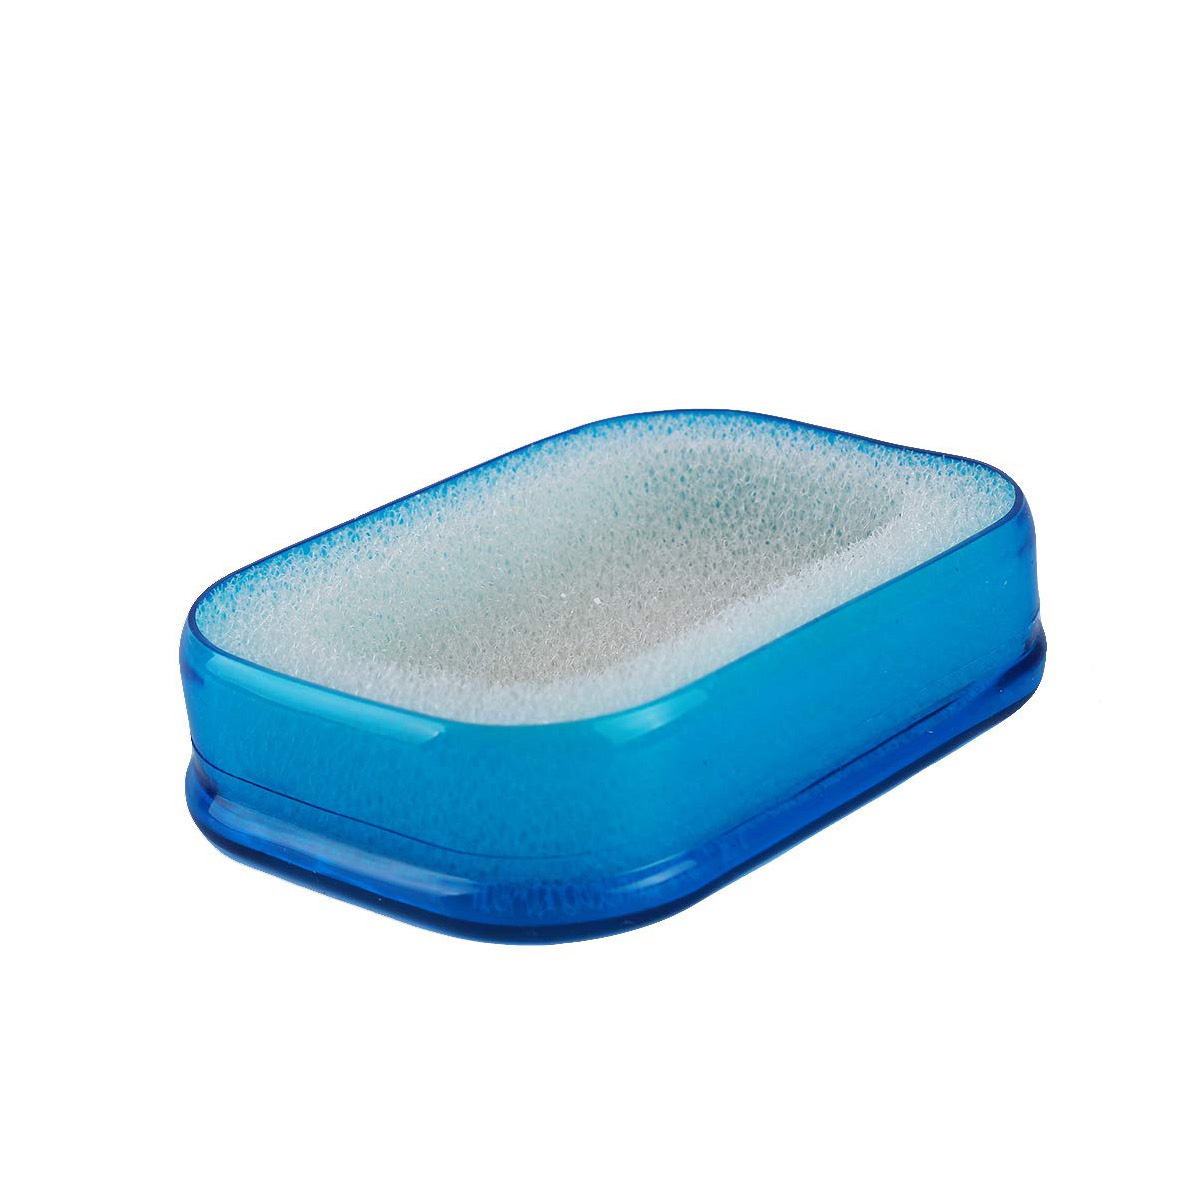 фото Мультифункциональная губка мыльница в пластиковой коробке, синий, bh-ash-03 bloominghome accents.